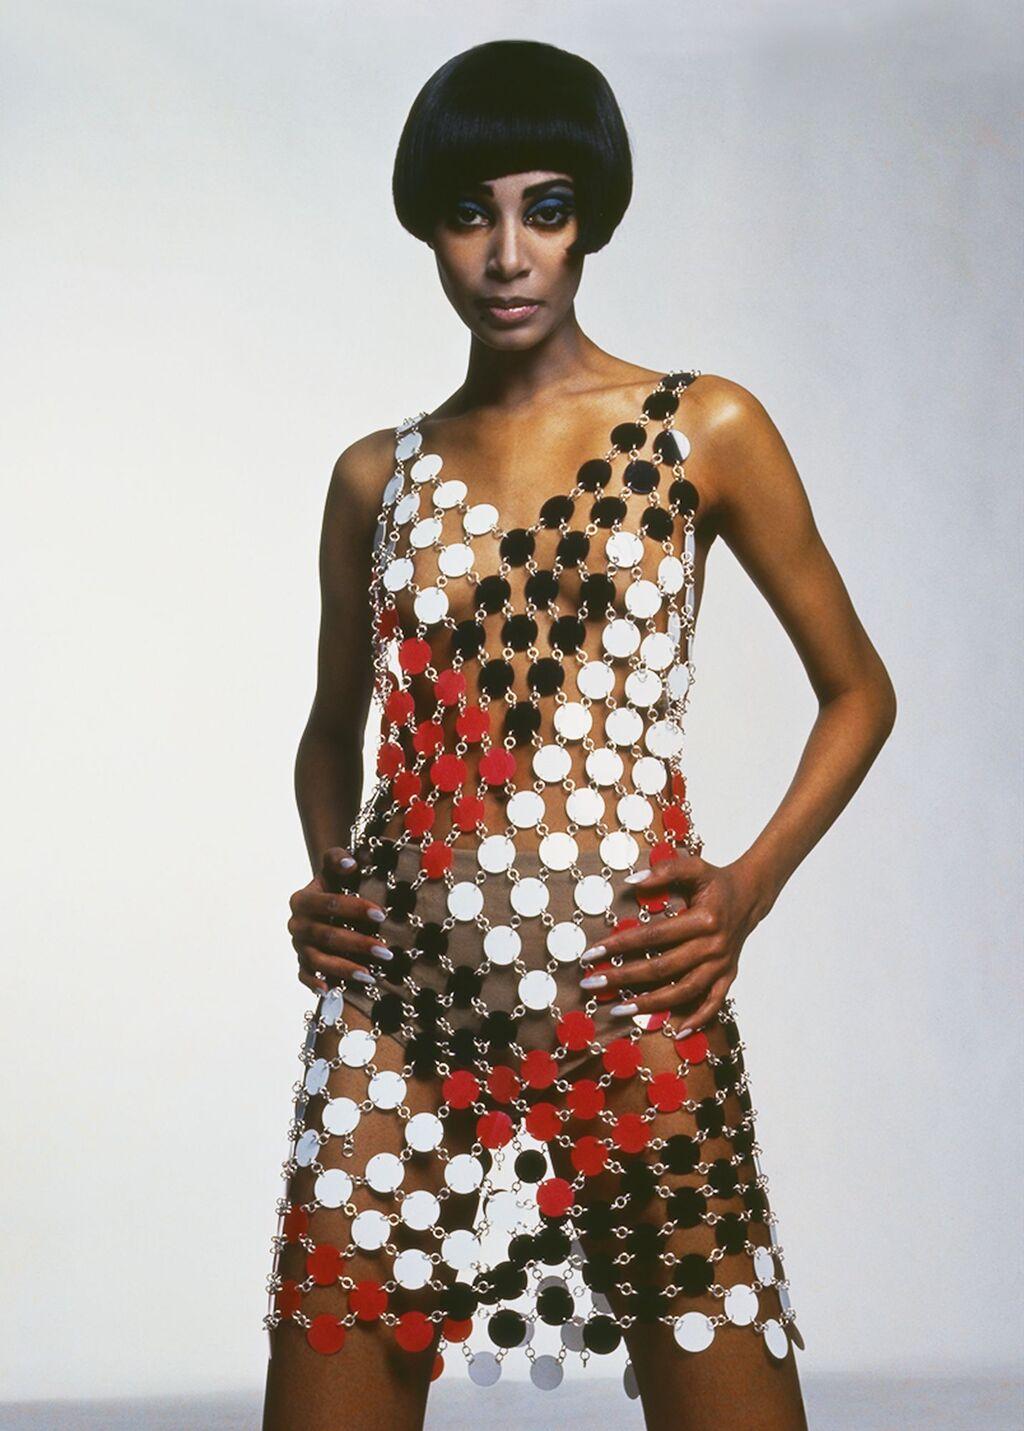 Donyale Luna in a Paco Rabanne dress, Vogue Paris June 1966